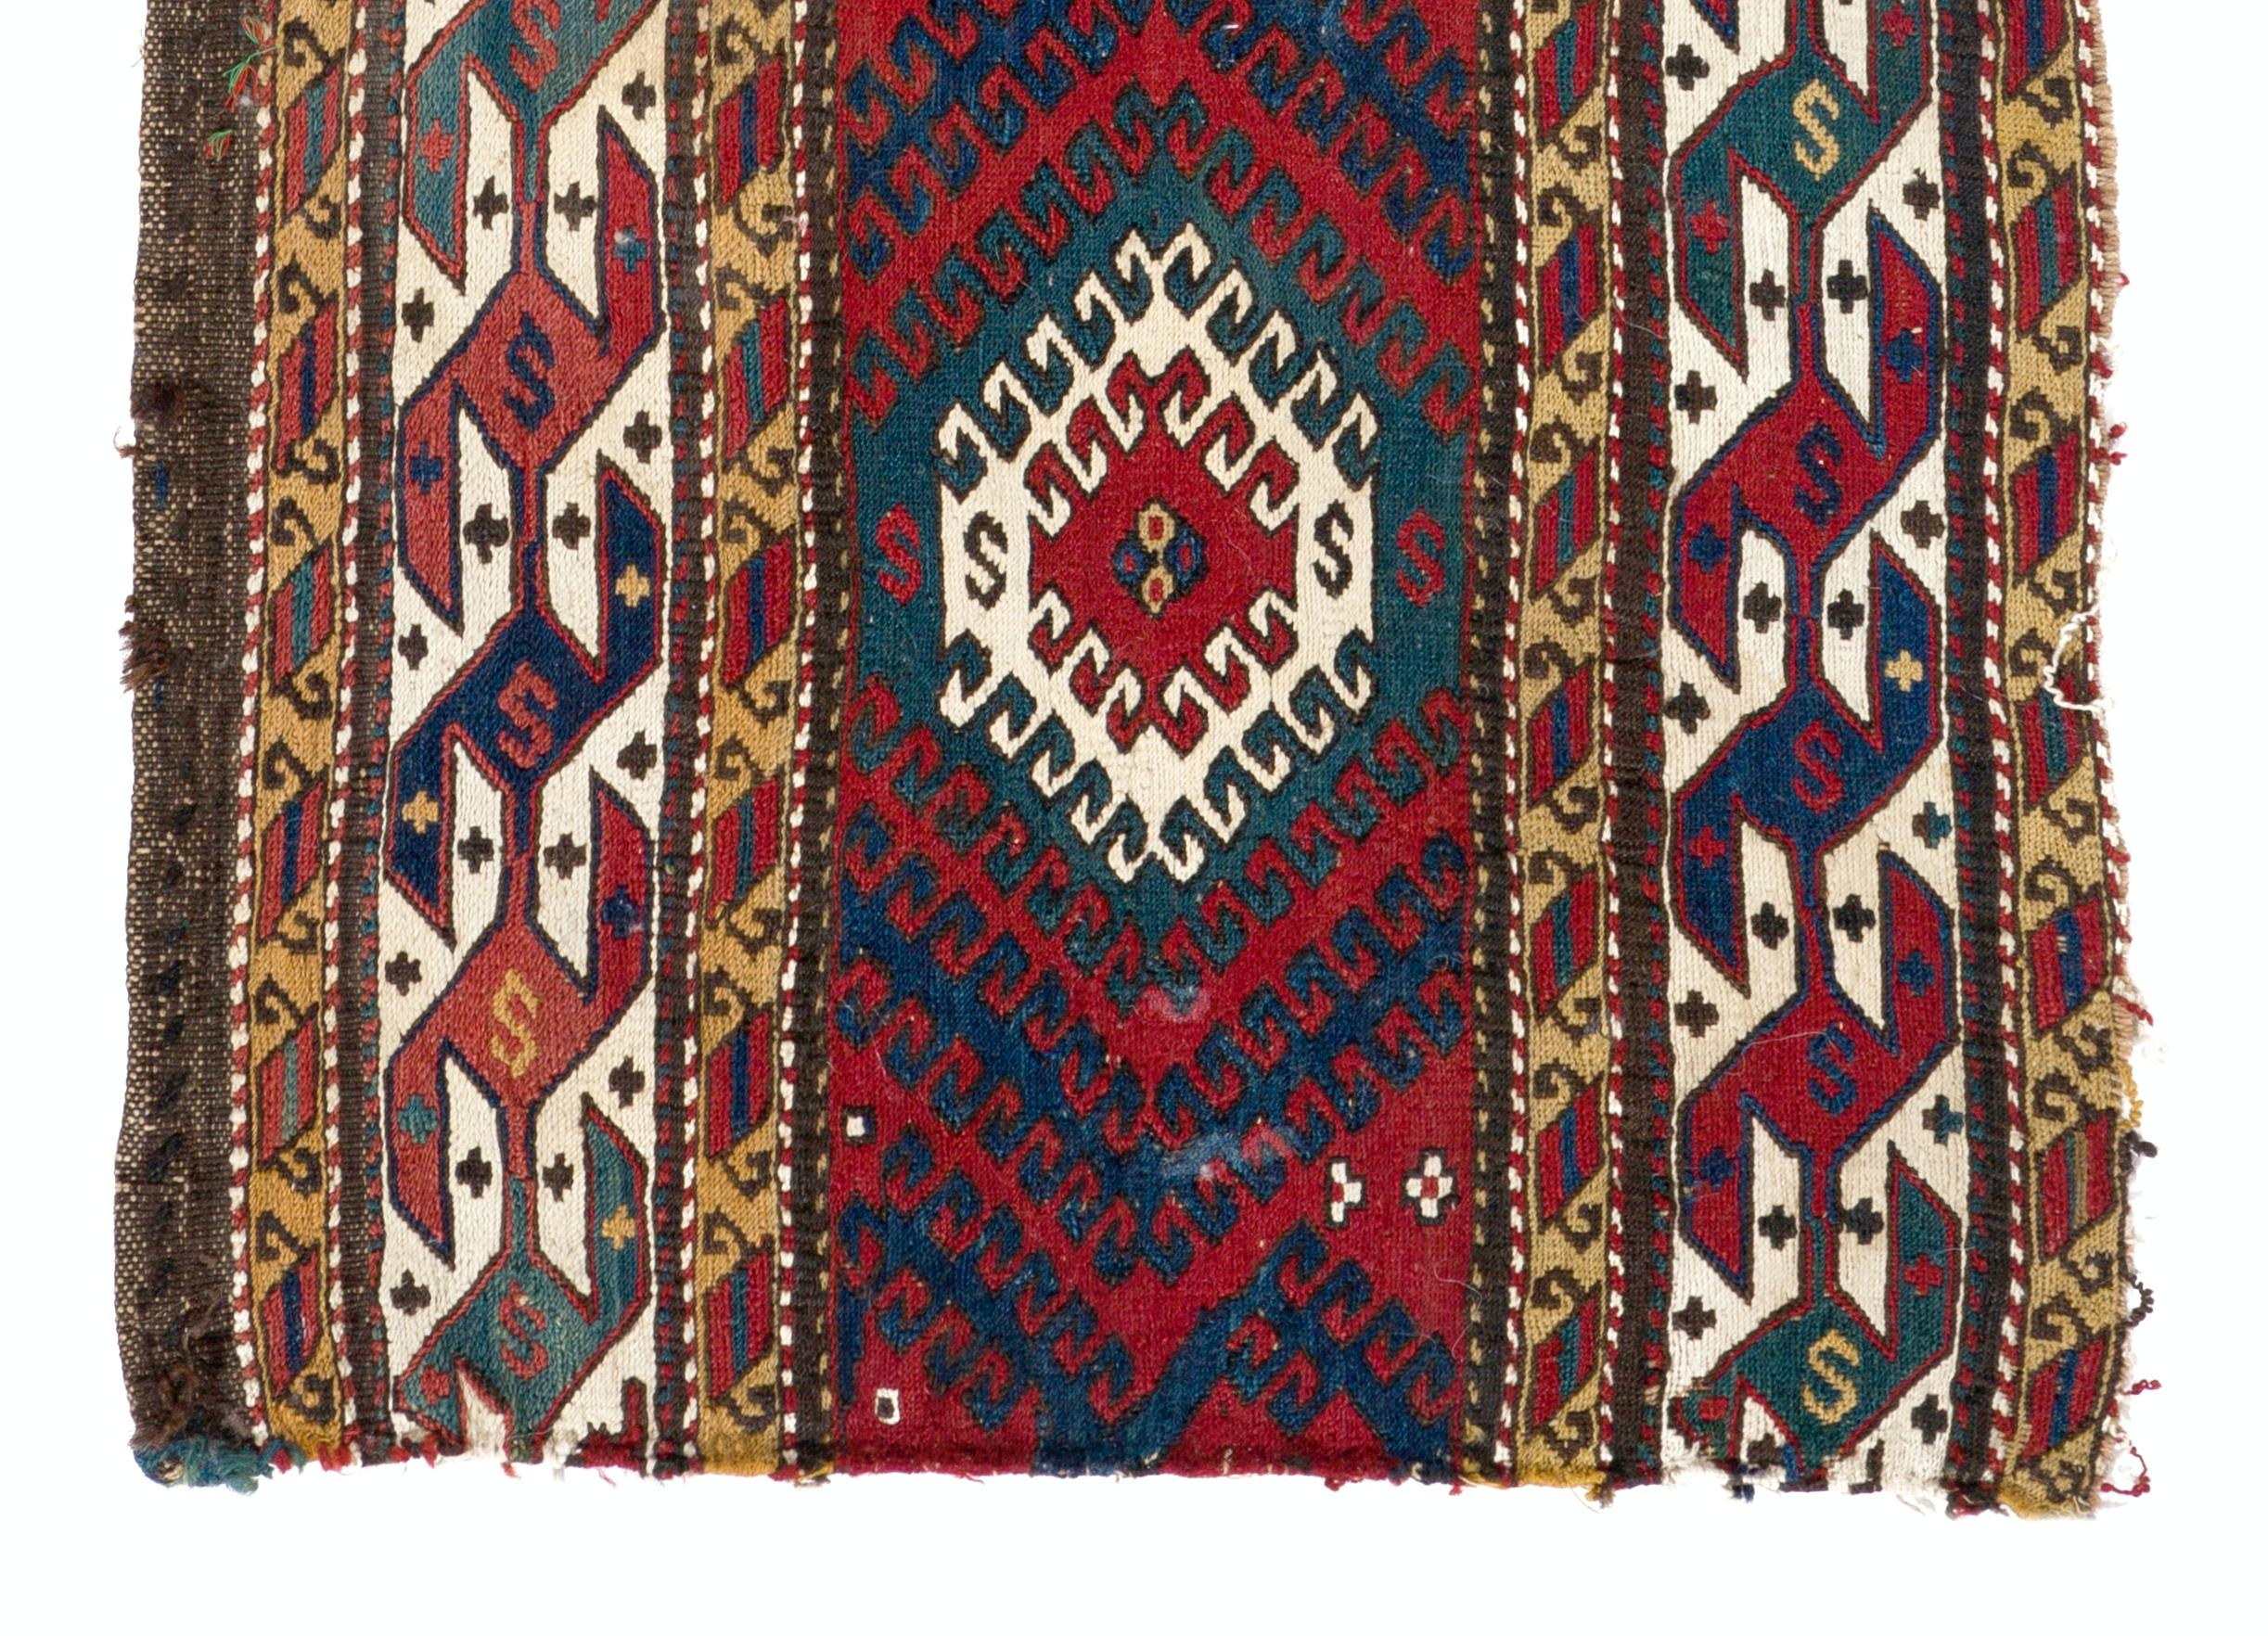 Dieses prächtige Textilkunstwerk ist ein Seitenteil einer antiken kaukasischen Mafrasch (Babywiege). Es ist alles natürlich gefärbt und handgewebt in Soumak-Technik mit Wolle und Baumwolle.